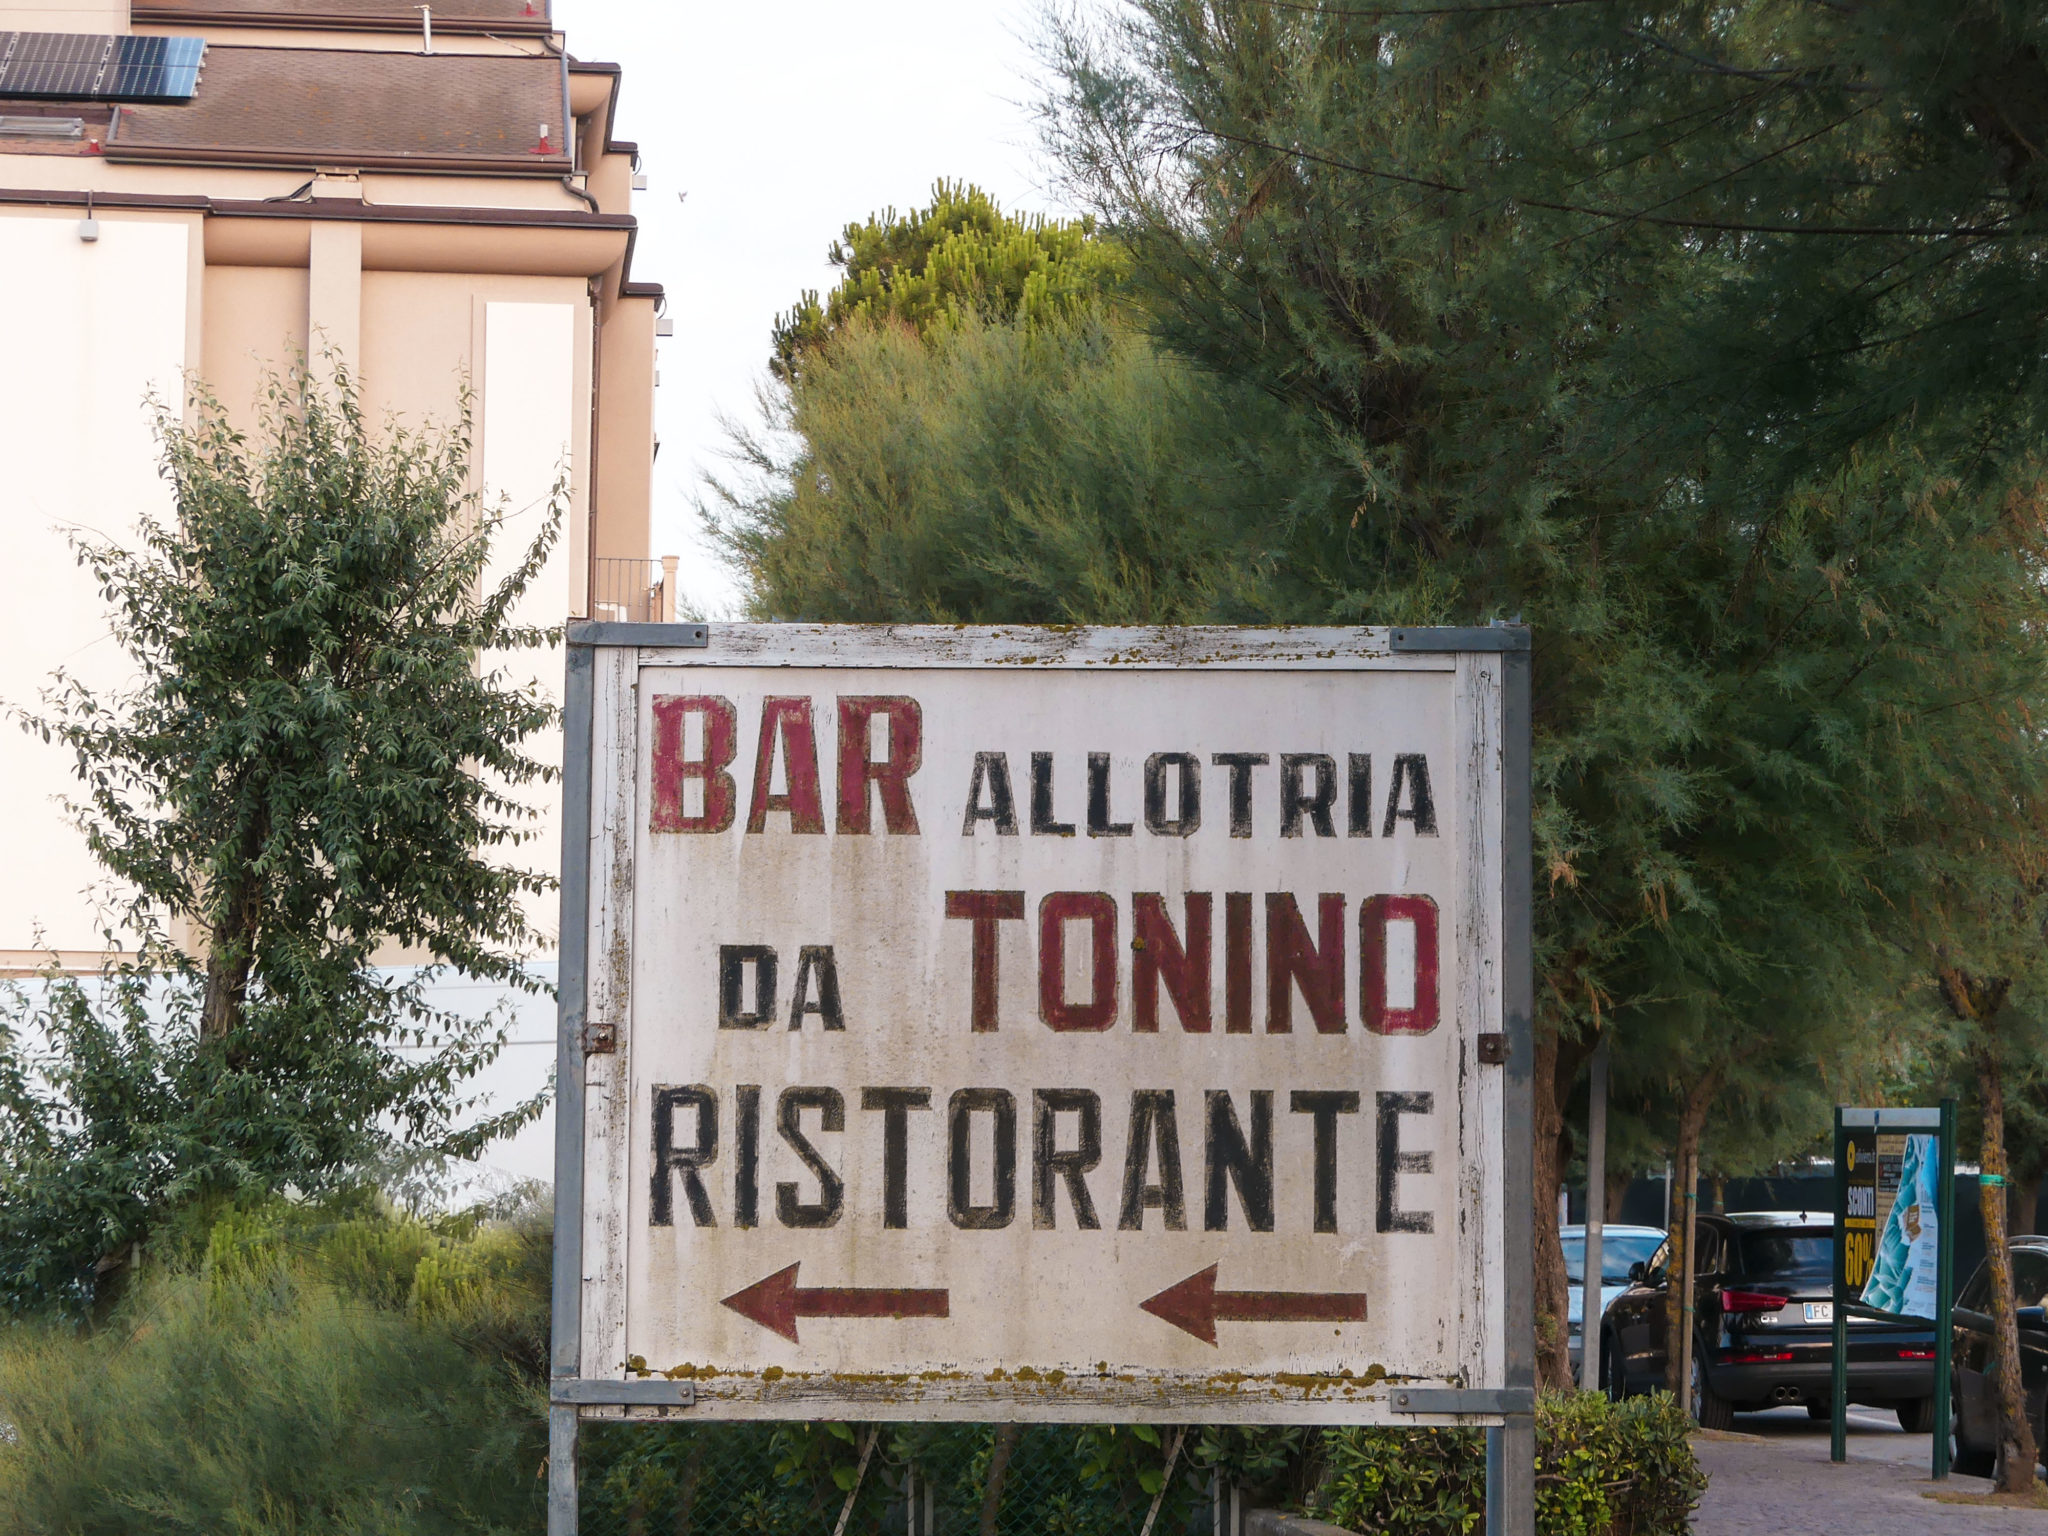 Allotria, Zamarèn e Gher: 3 osterie di mare a Riccione. Ci siamo fatti raccontare dai gestori le loro storie, e i loro piatti